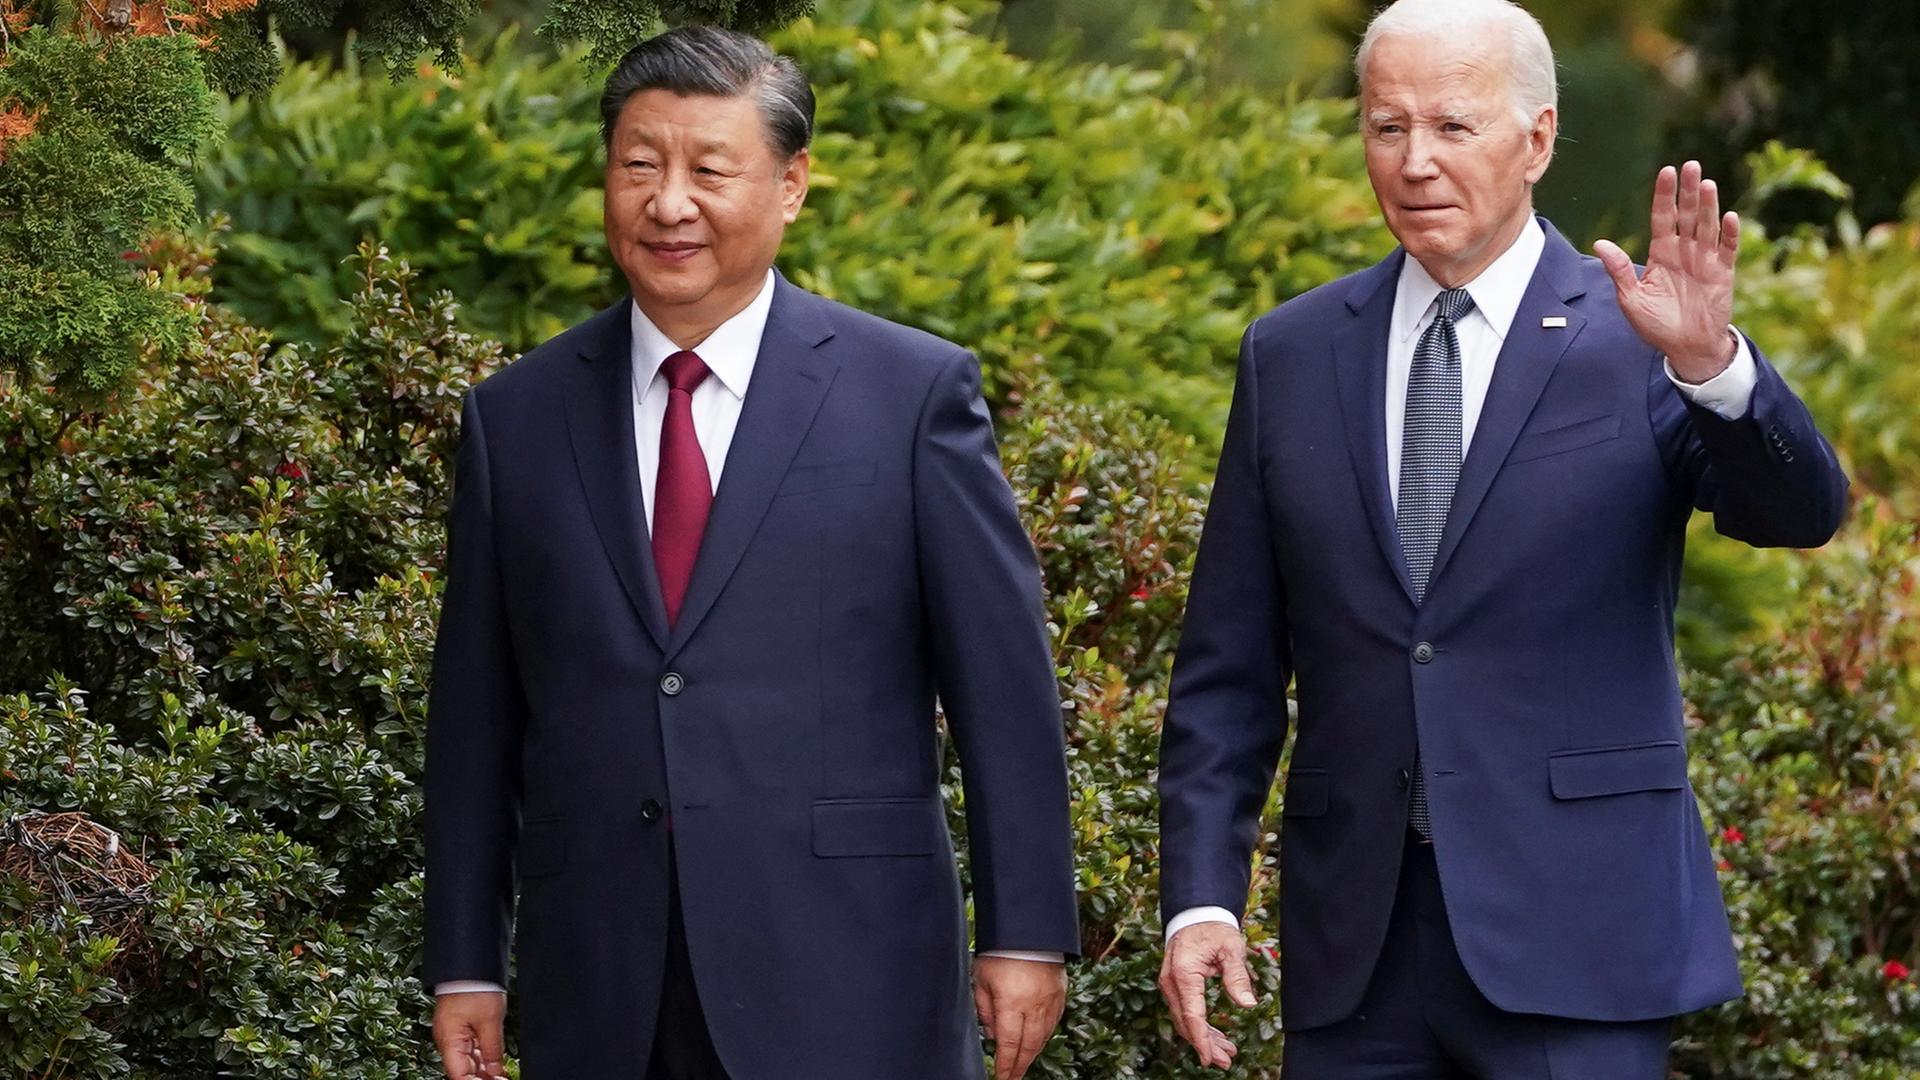 US-Präsident Joe Biden und sein chinesischer Amtskollege Xi Jinping beim gemeinsamen Spaziergang im kalifornischen Woodside.